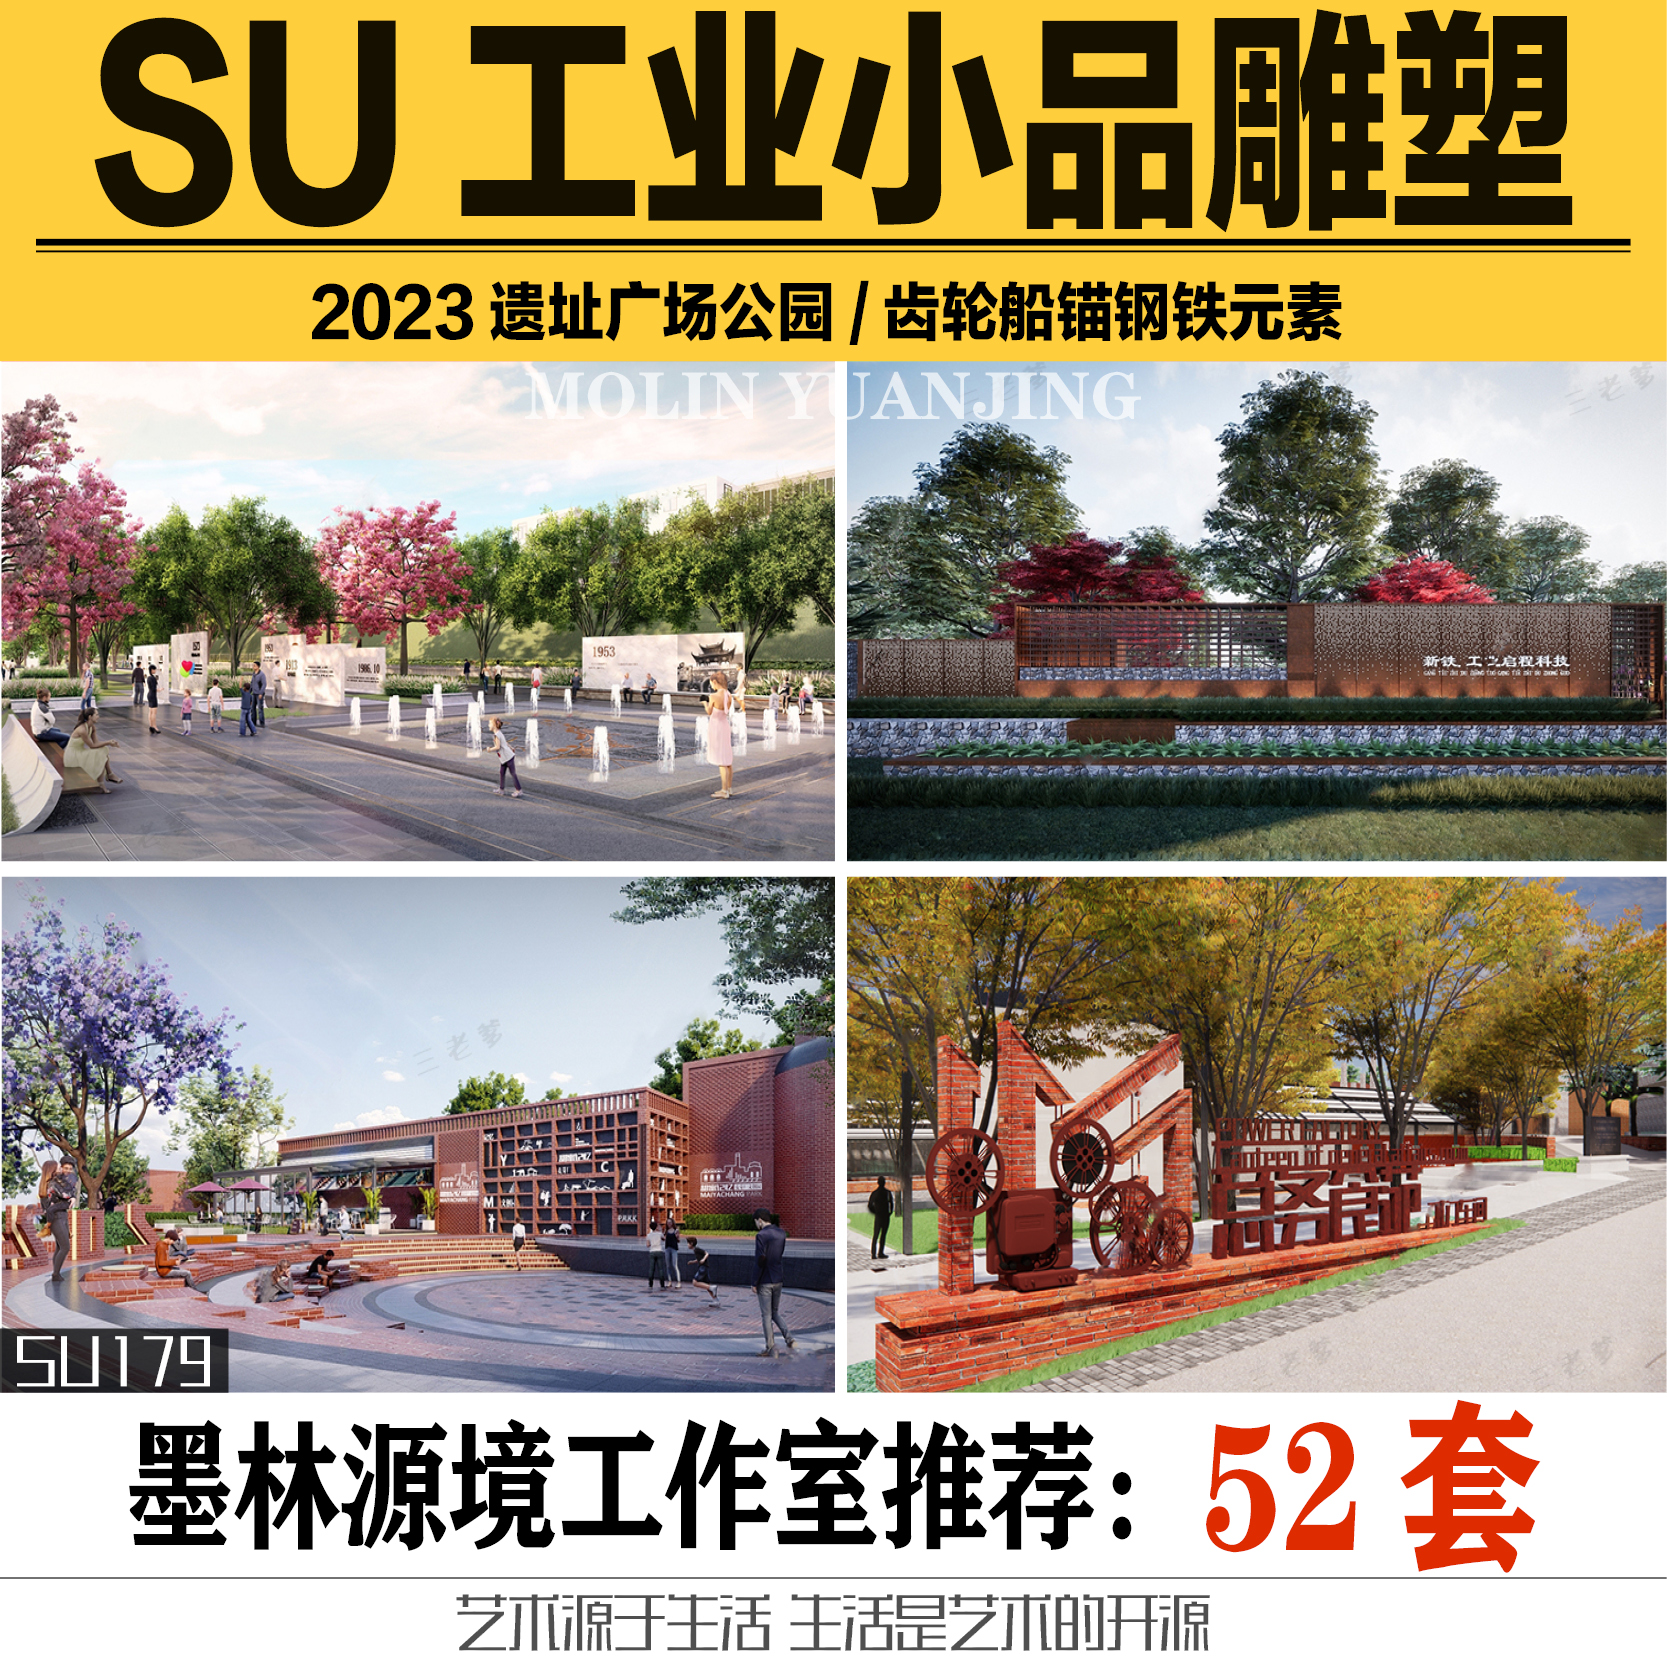 2023SU模型工业钢铁元素小品构筑物工厂景观雕塑齿轮船锚sketchup